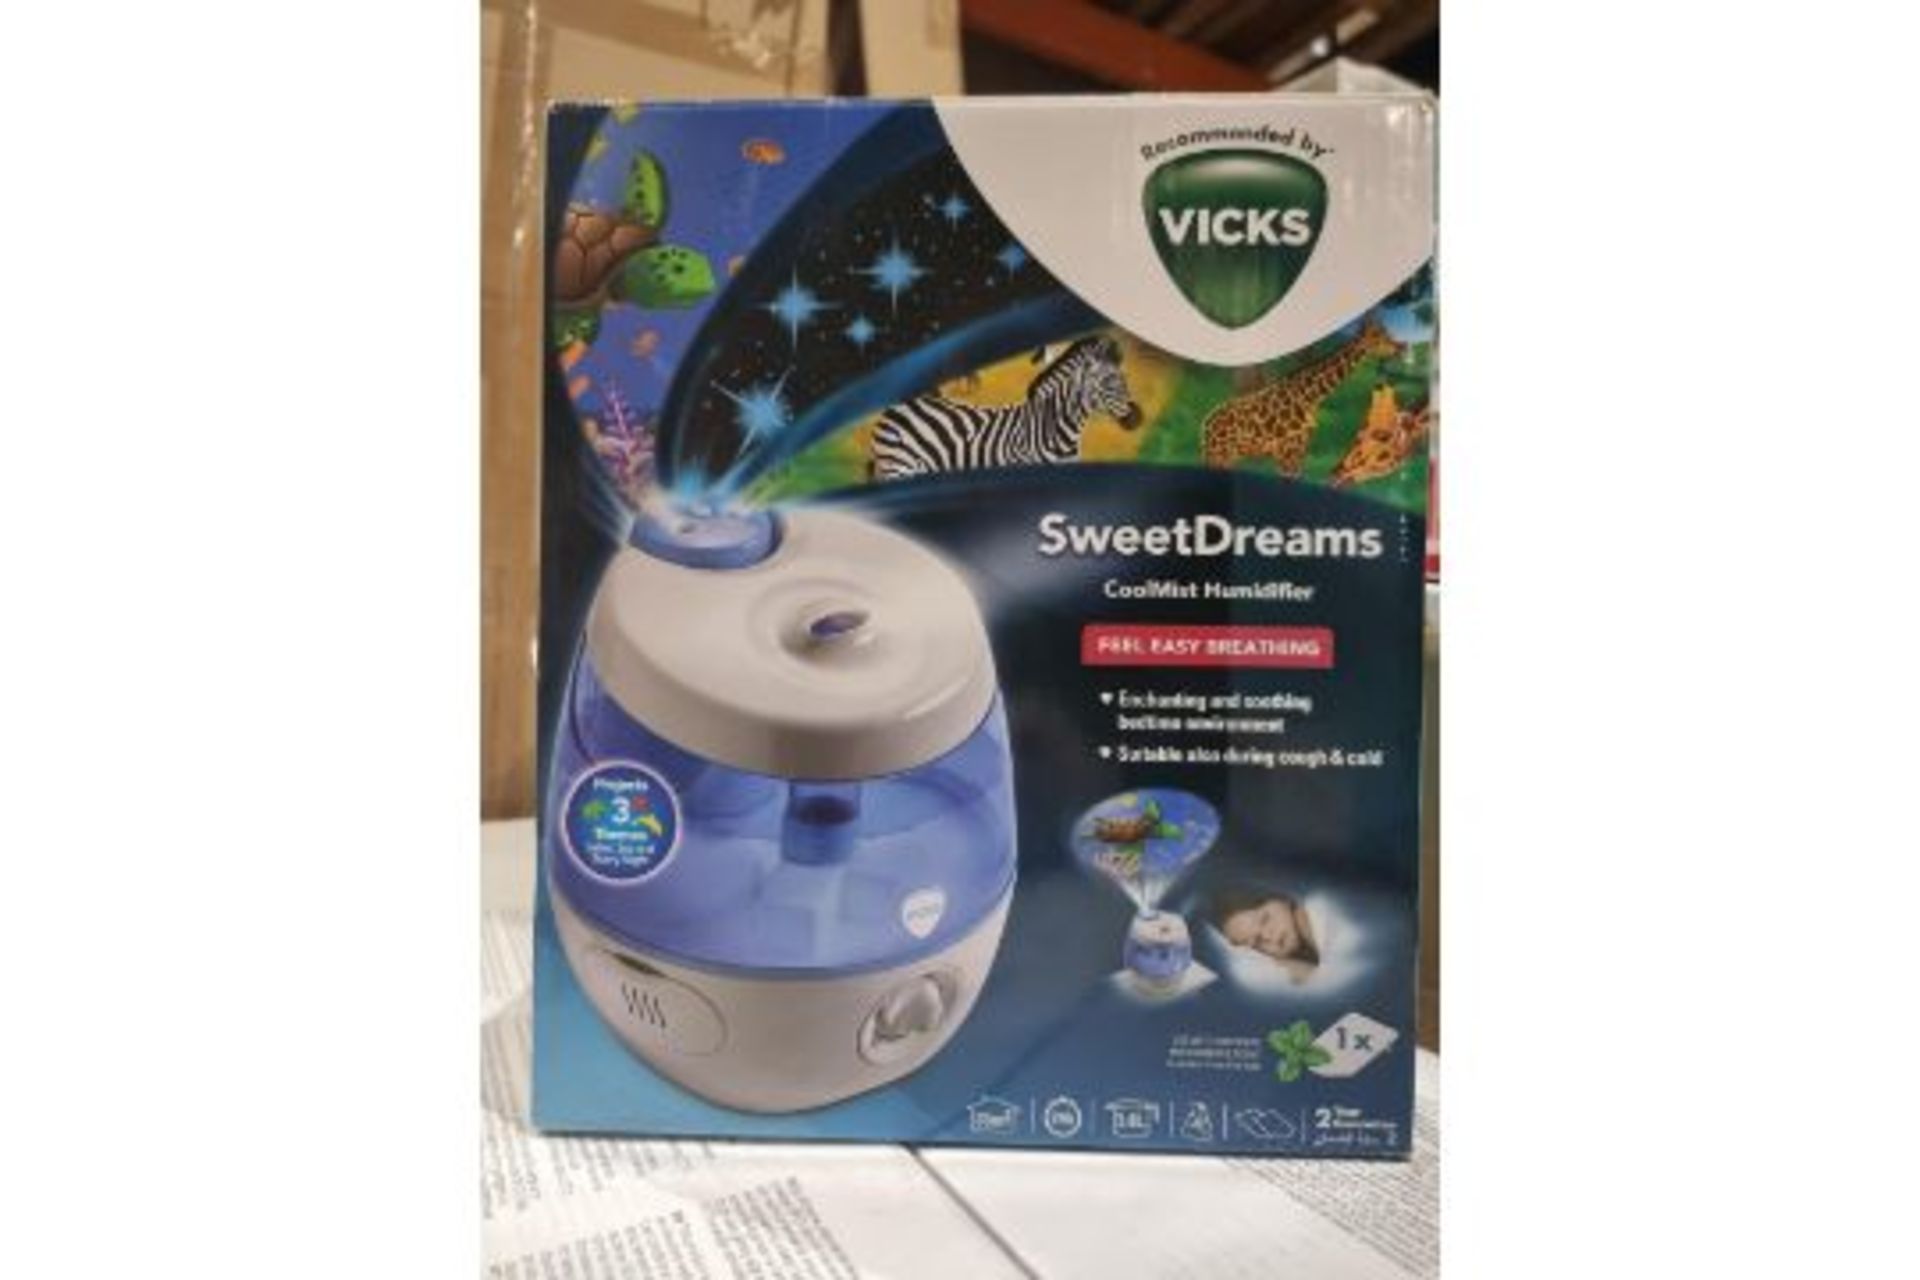 3 X Vicks VUL575 SweetDreams Cool Mist Ultrasonic Humidifier. The Vicks Sweet Dreams Humidifier is